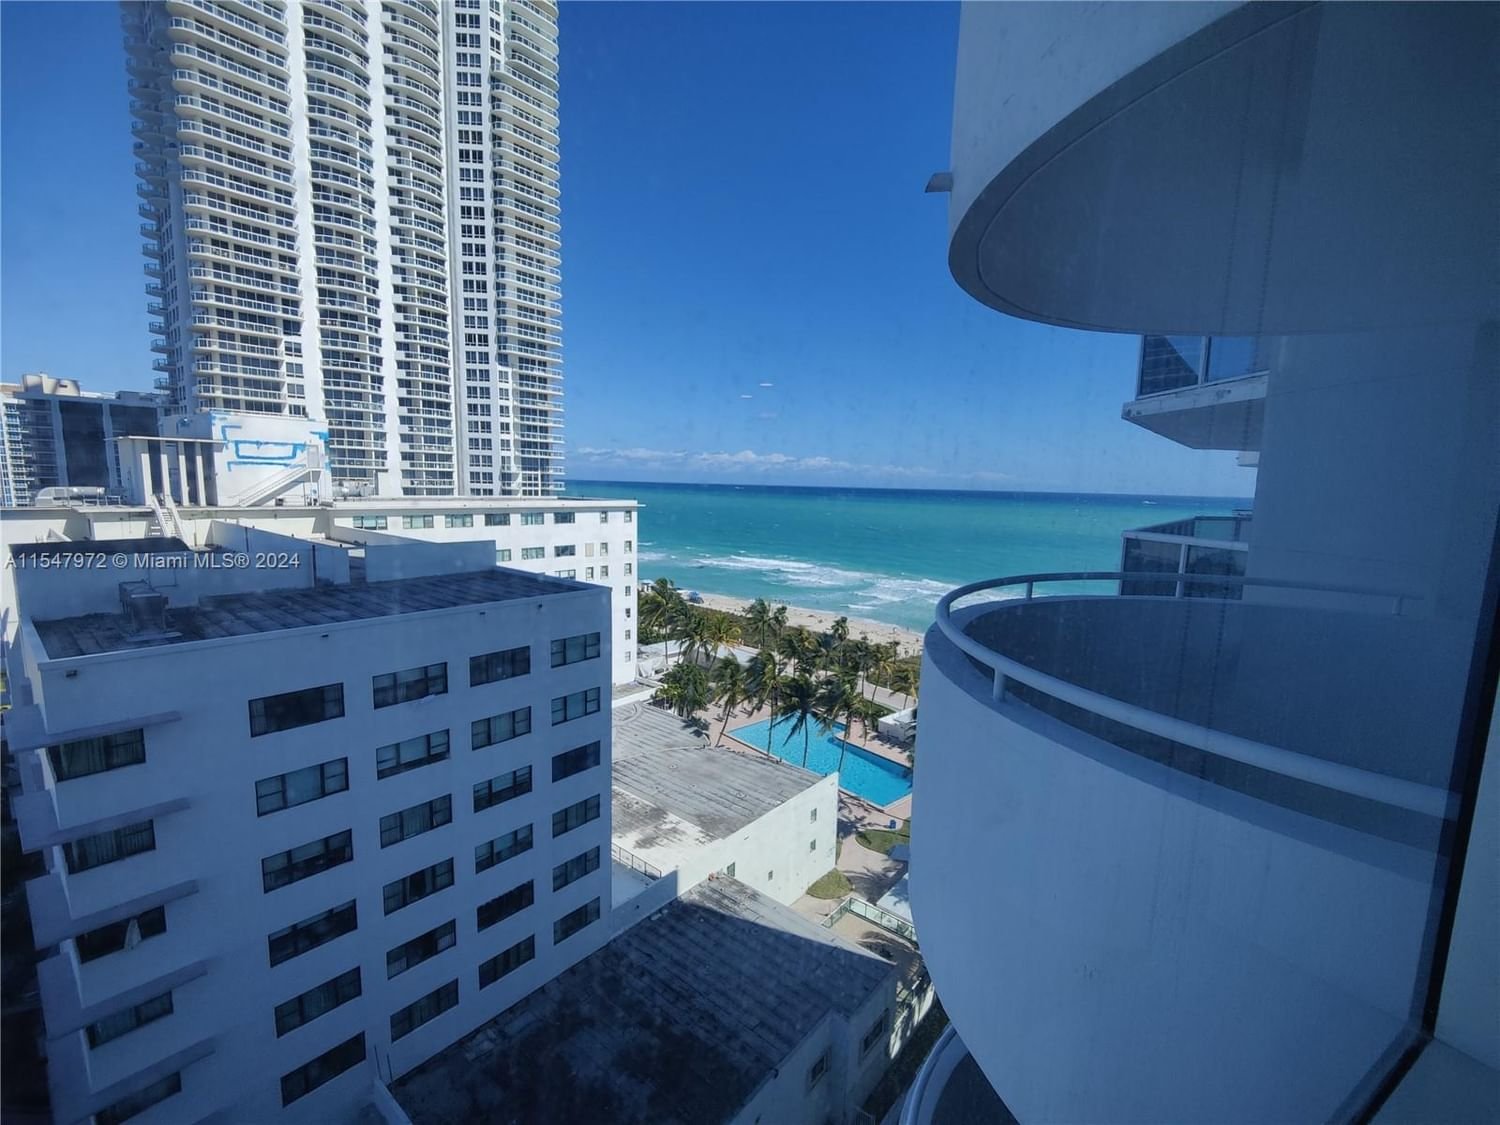 Real estate property located at 6301 Collins Ave #1407, Miami-Dade County, LA GORCE PALACE CONDO, Miami Beach, FL